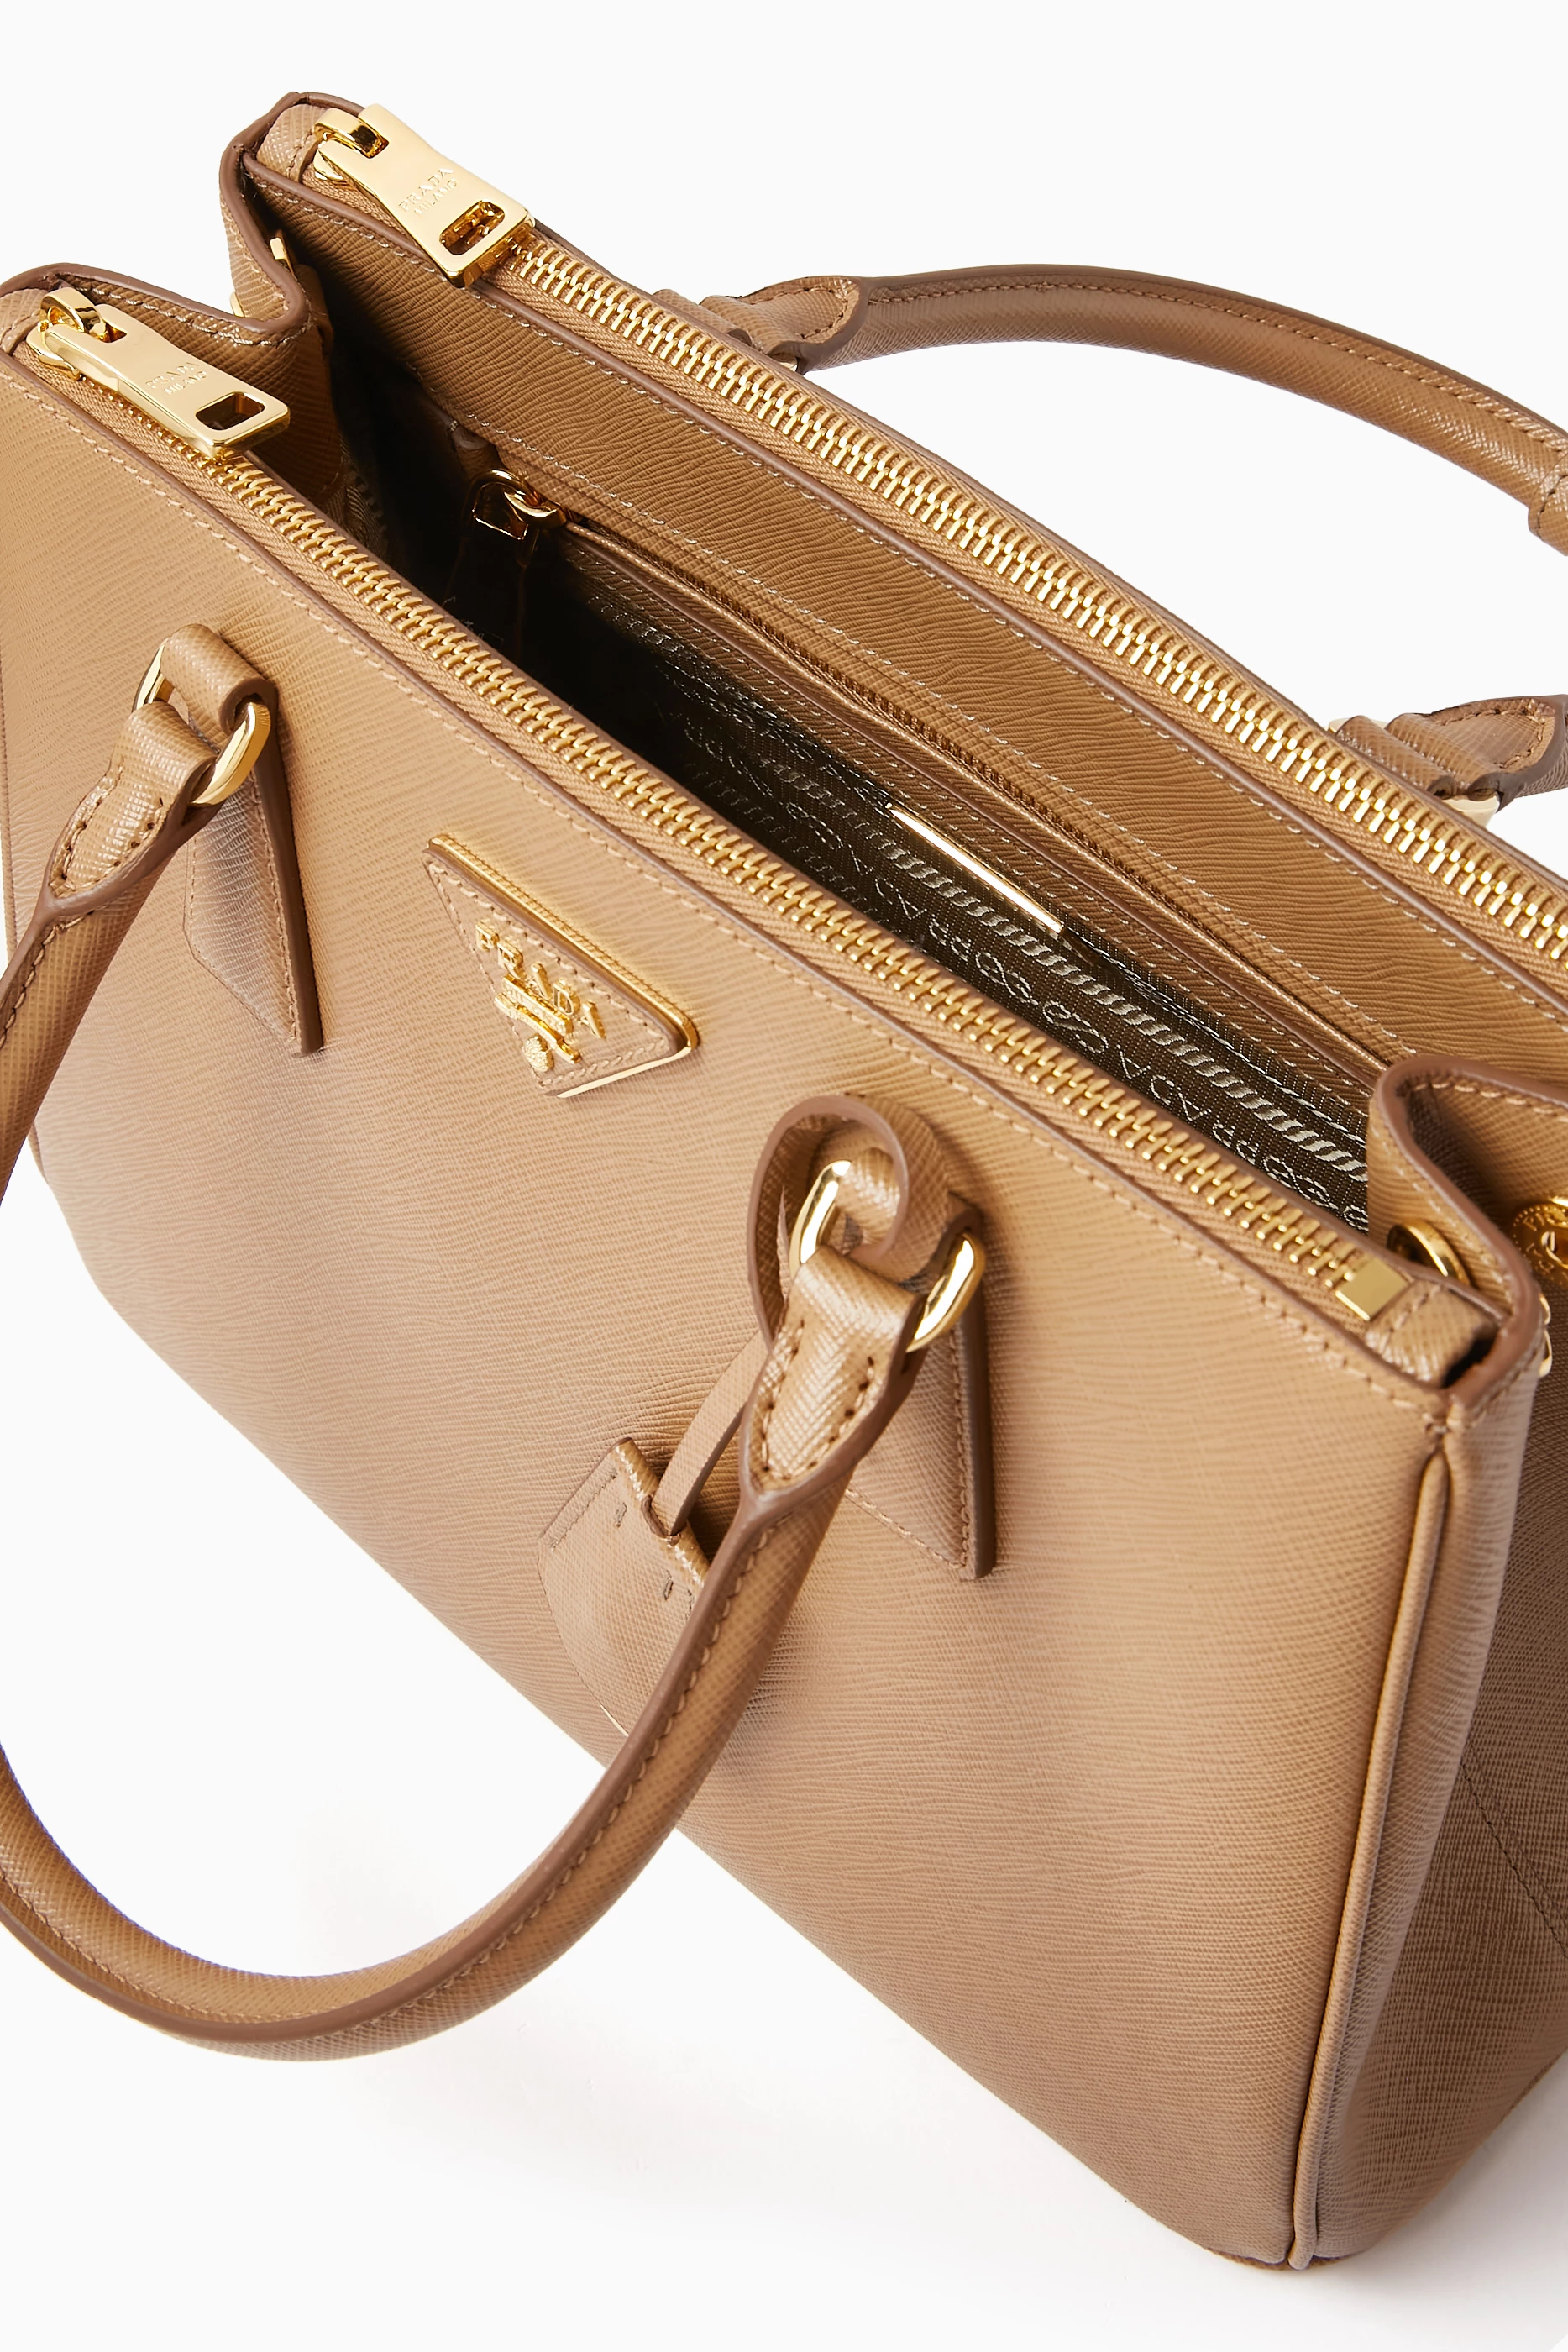 Prada Galleria Saffiano Leather Medium Bag in Cameo Size 30